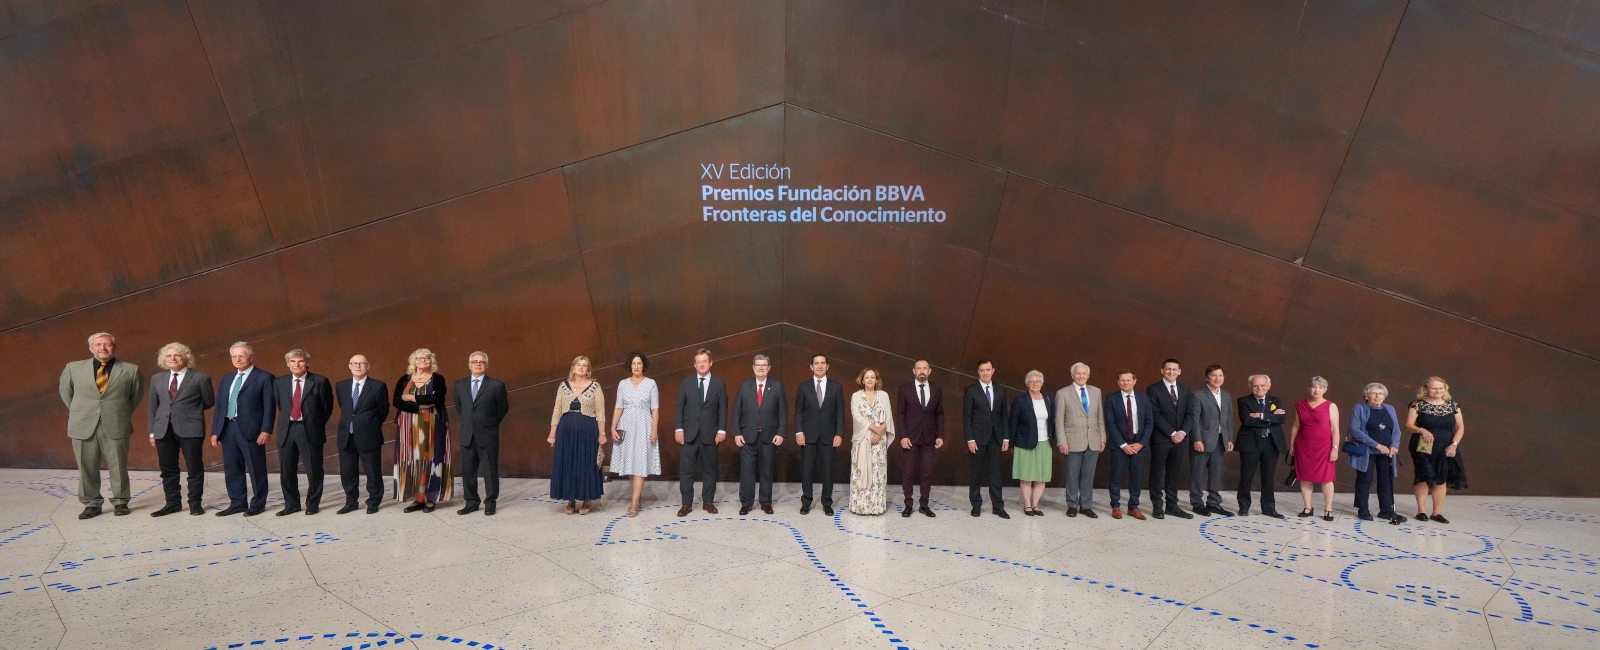 La Fundación BBVA rinde homenaje a los galardonados de los XV Premios Fronteras del Conocimiento con un concierto extraordinario en el auditorio Euskalduna Bilbao